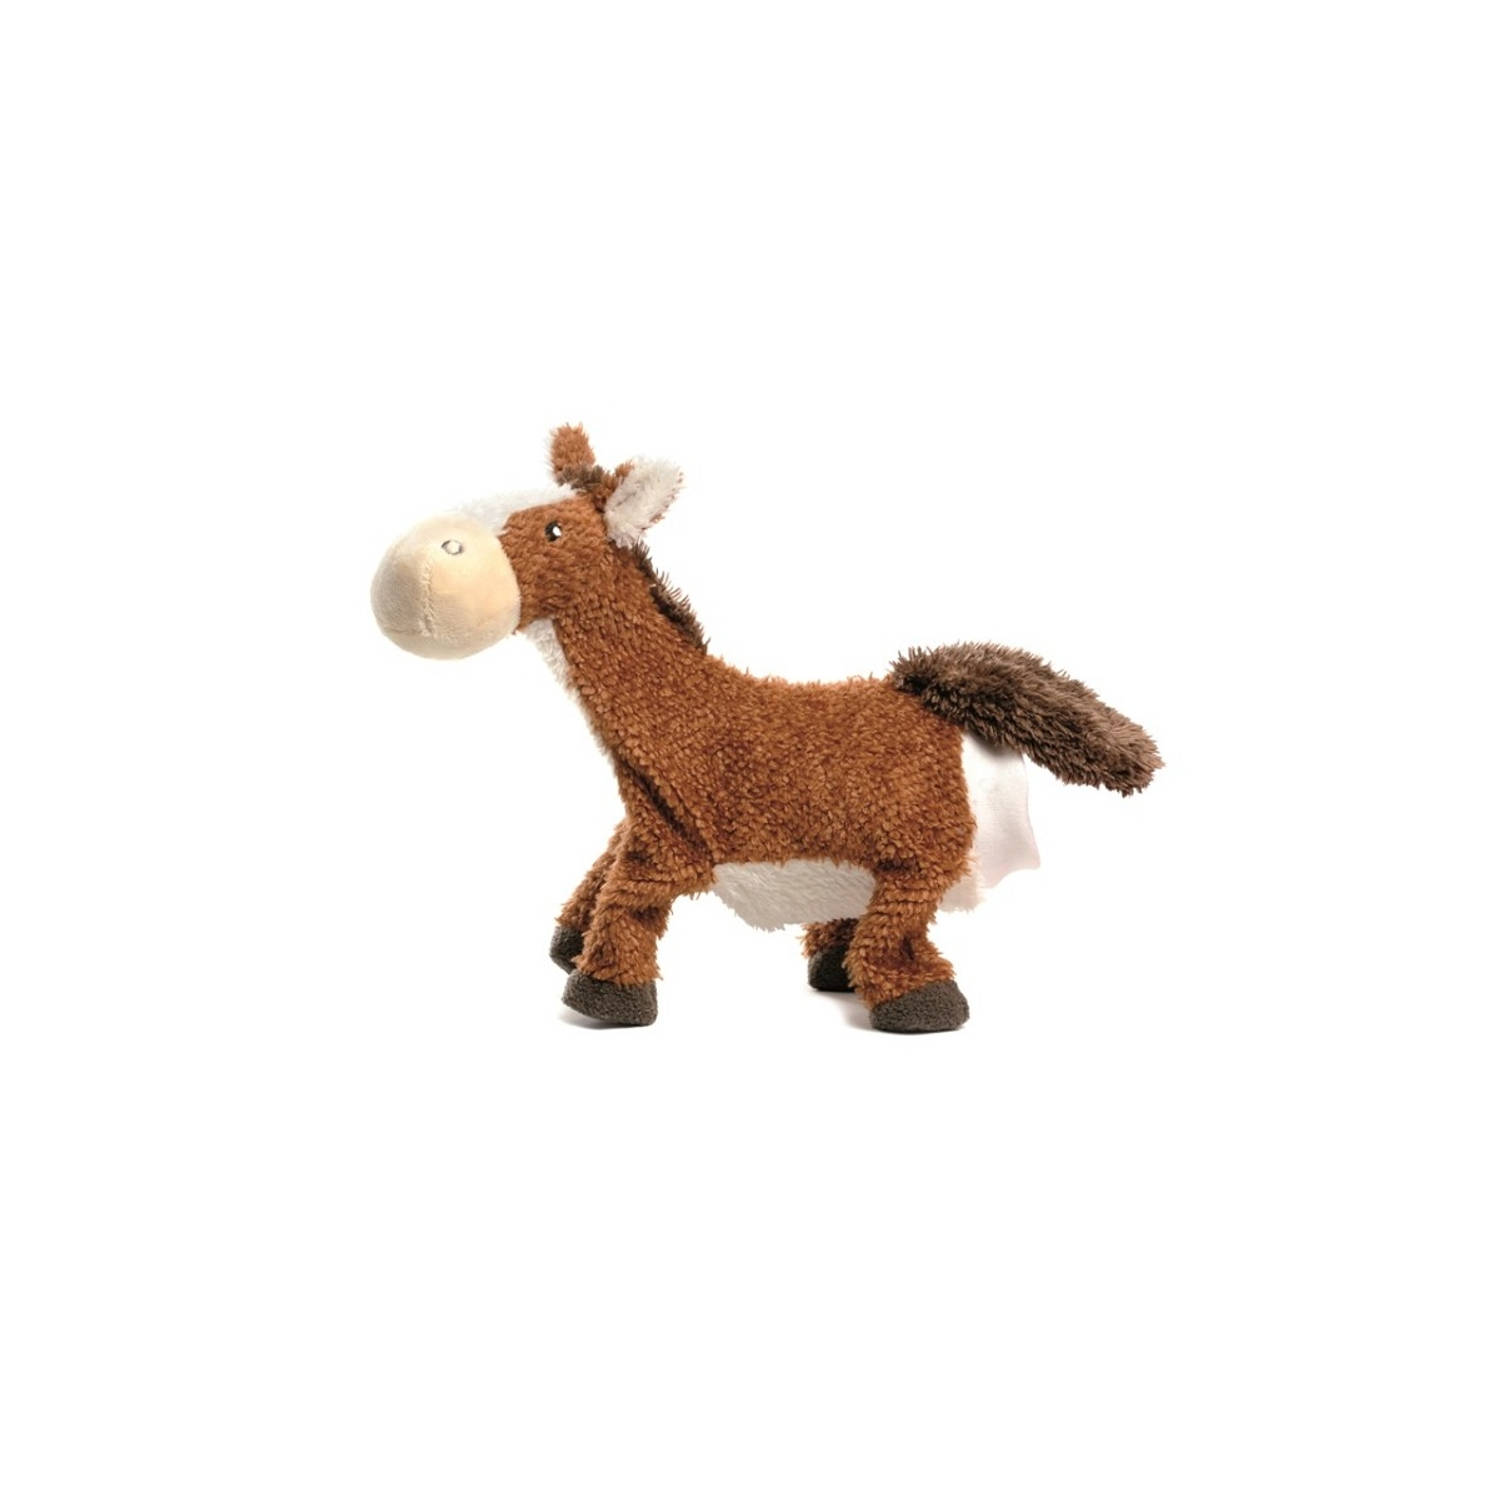 Egmont Toys Handpop dier paard 24 cm